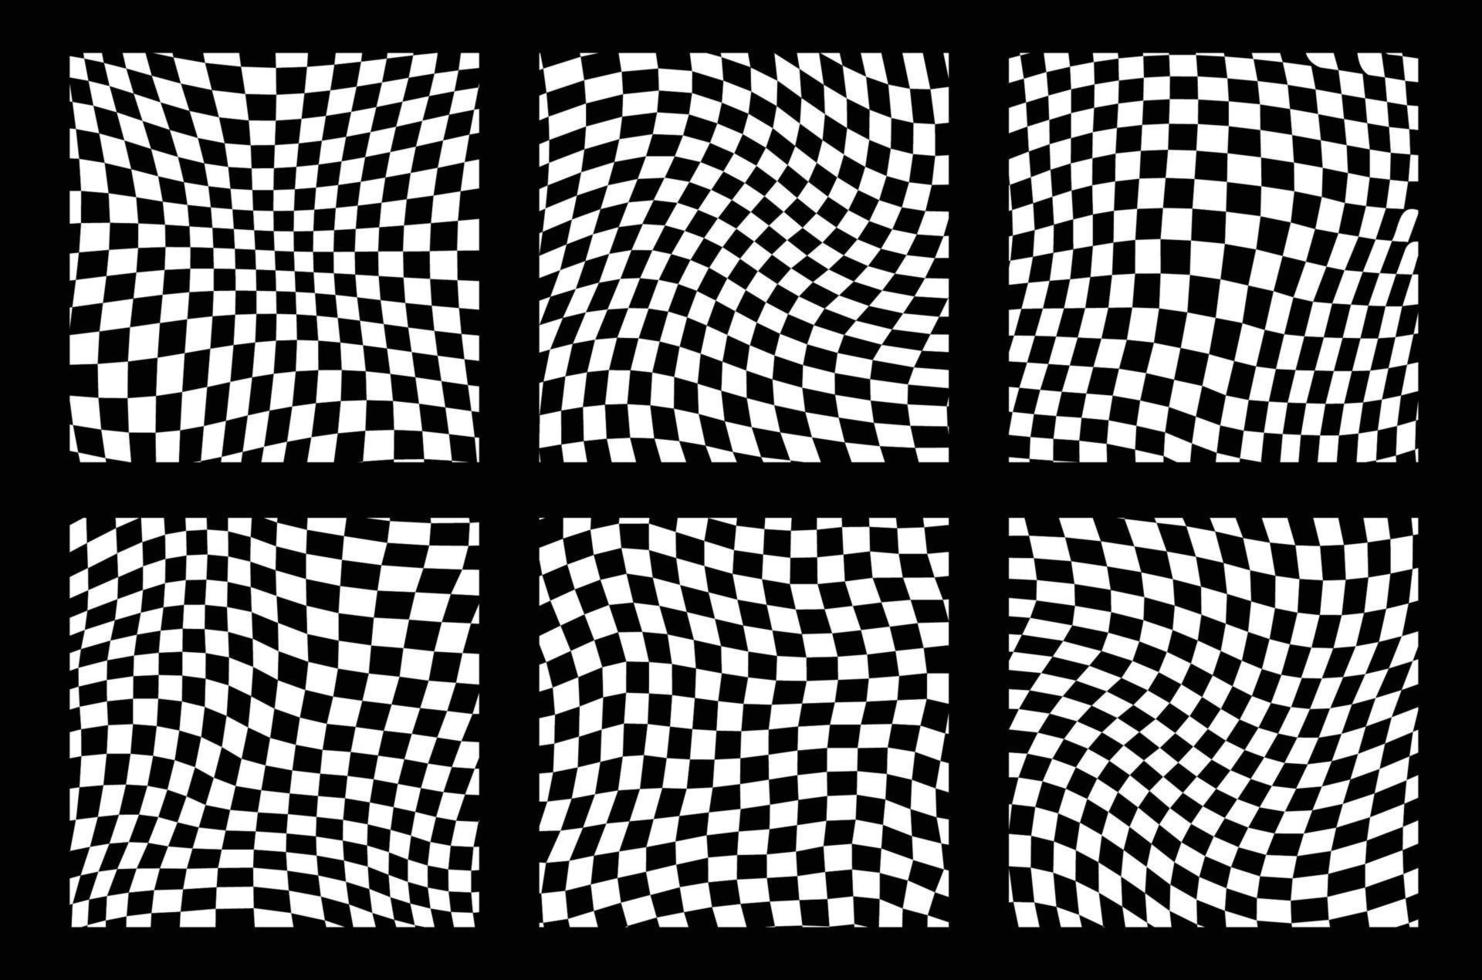 Fondo de patrón retro maravilloso en estilo de fondo psicodélico a cuadros. un tablero de ajedrez en un diseño abstracto minimalista con un ambiente estético de los años 60 y 70. estilo hippie y2k. Ilustración de vector de impresión funky